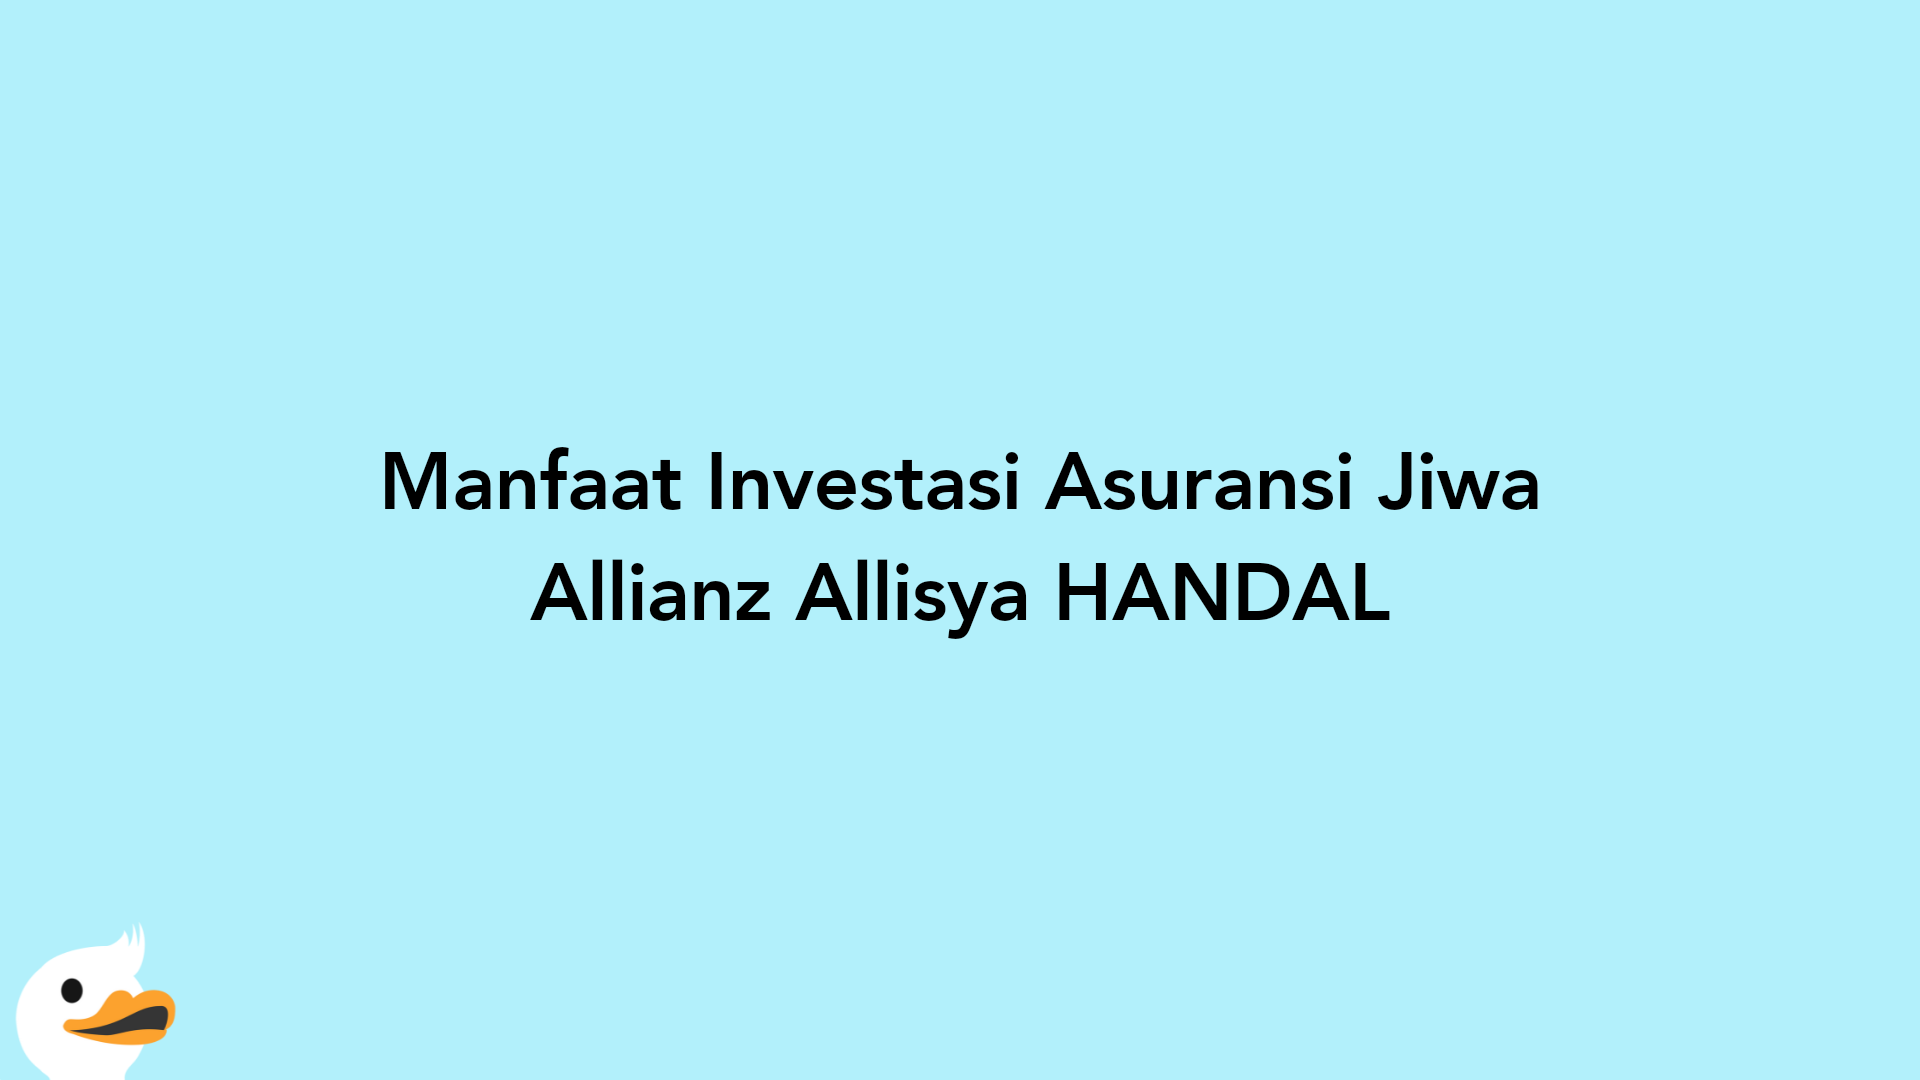 Manfaat Investasi Asuransi Jiwa Allianz Allisya HANDAL